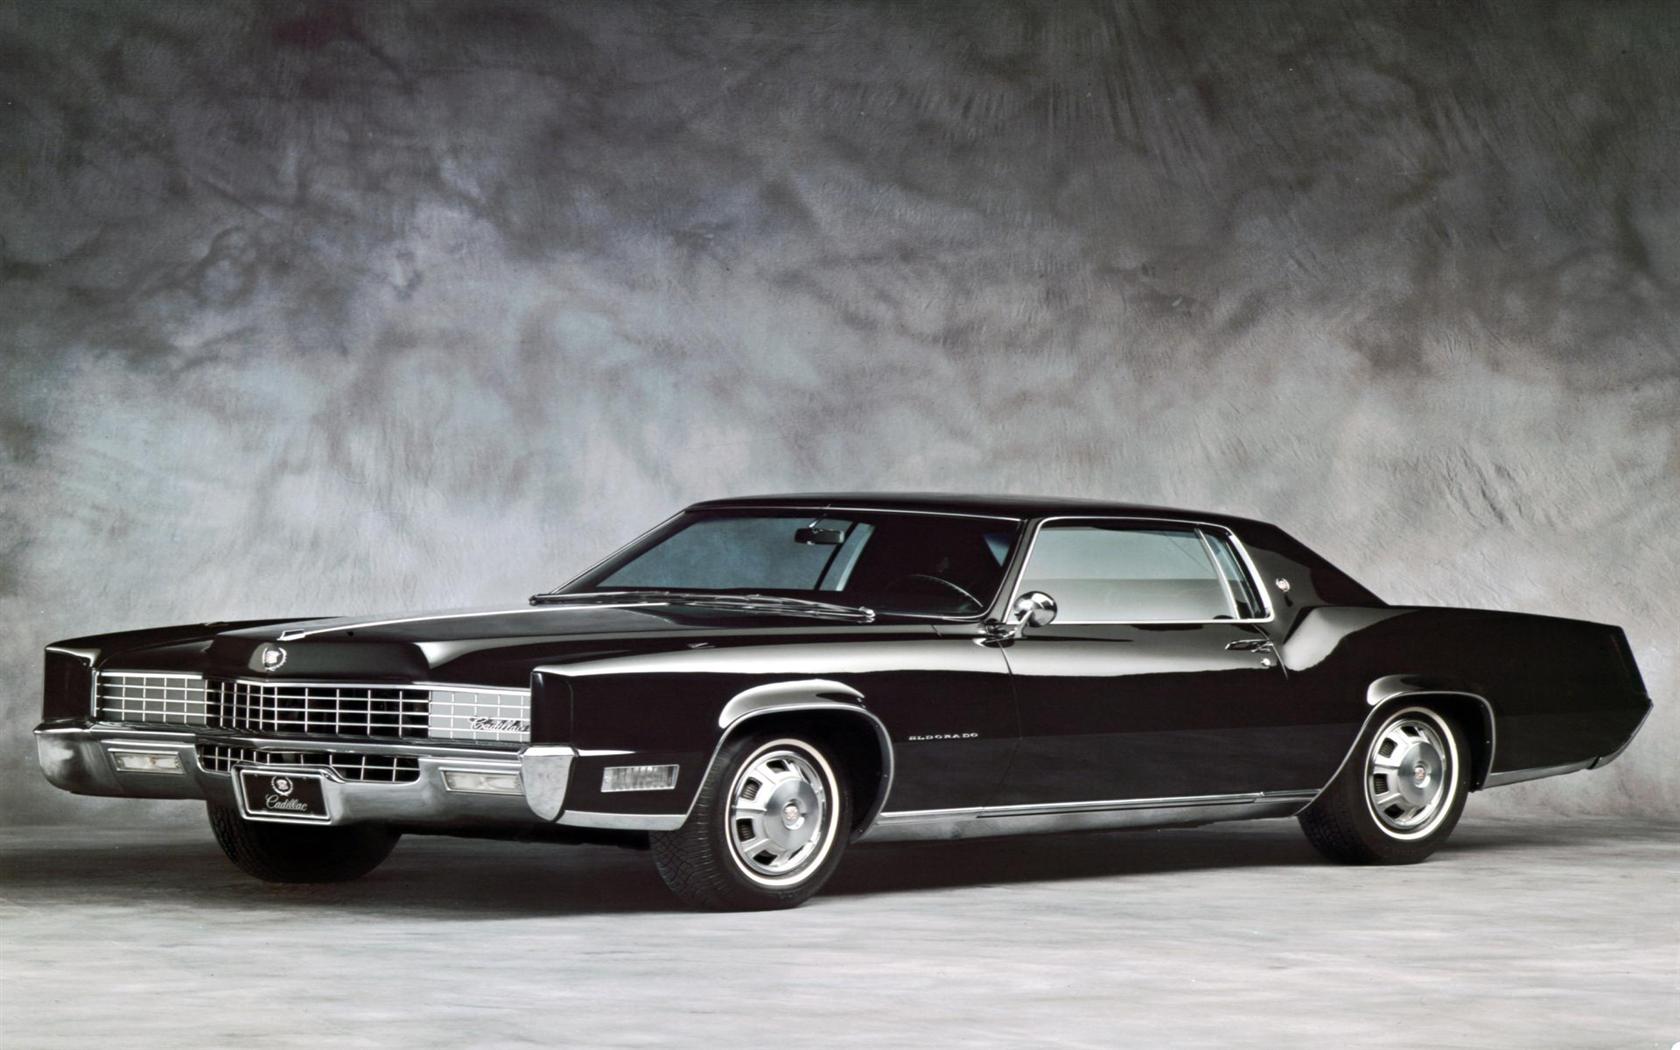 Cadillac Eldorado 1967 - image #189